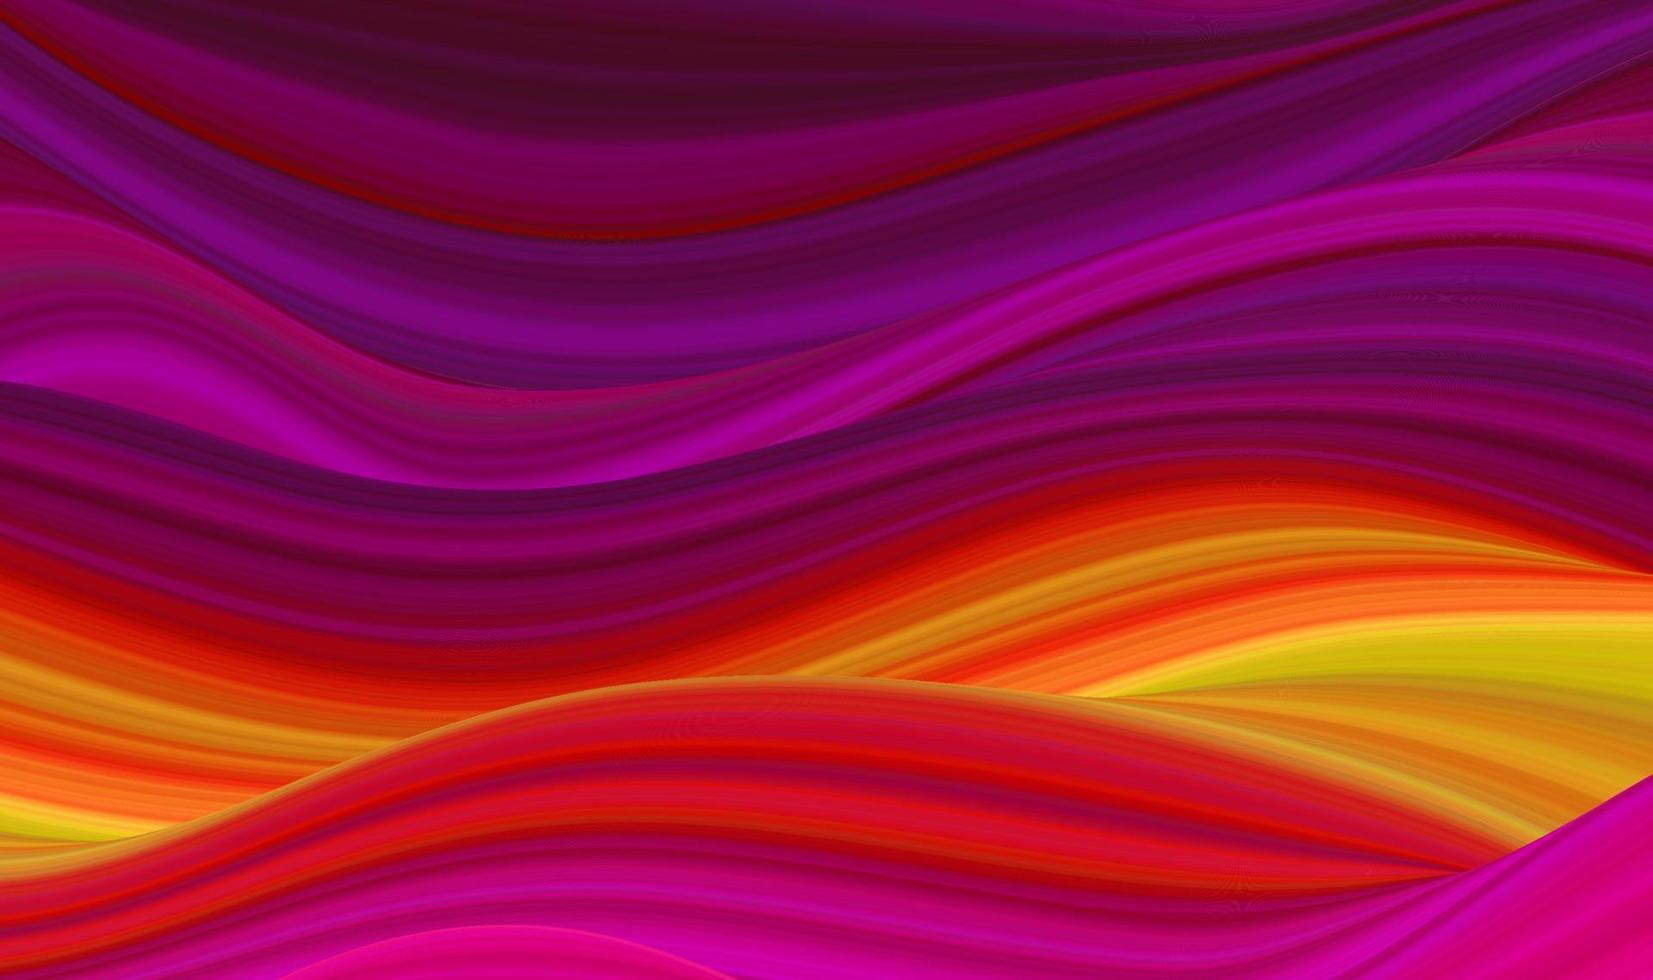 fondo vectorial abstracto con transiciones de color suave de rojo a amarillo y tonos de púrpura. espacio de fantasía futurista líquido. vector